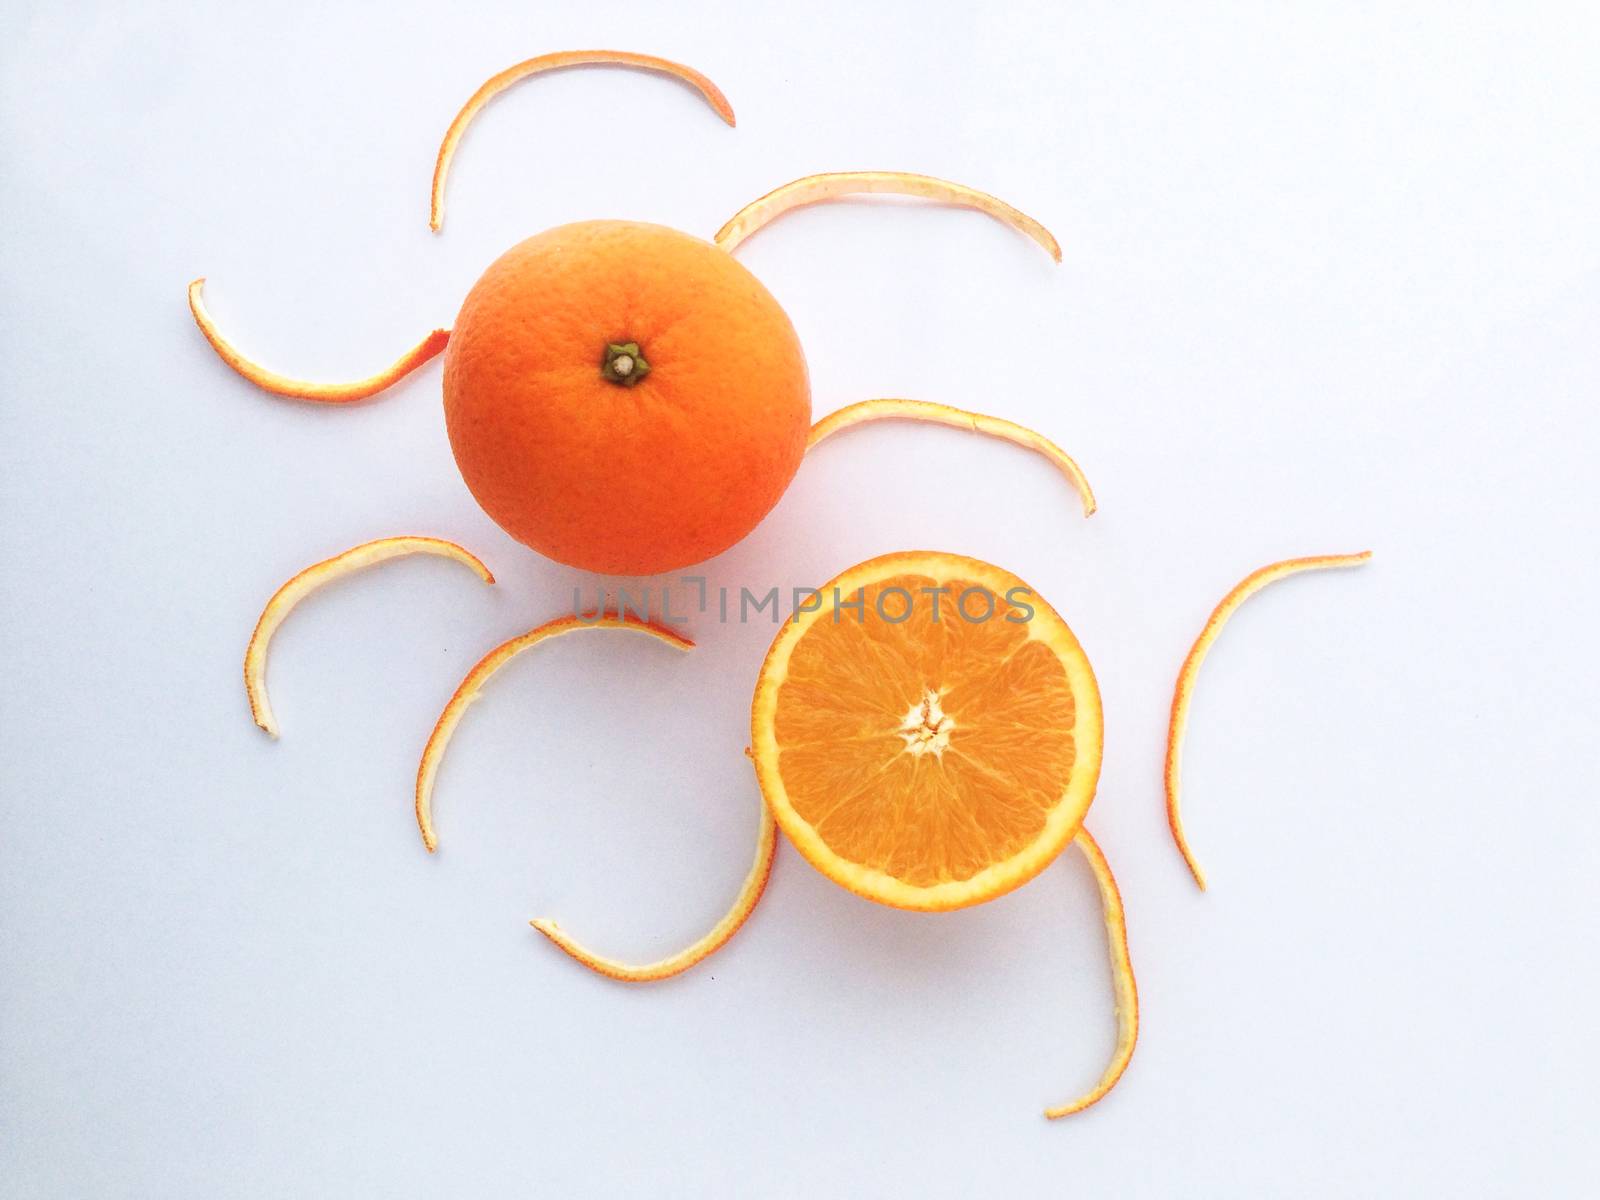 Fresh orange and slices on white background.